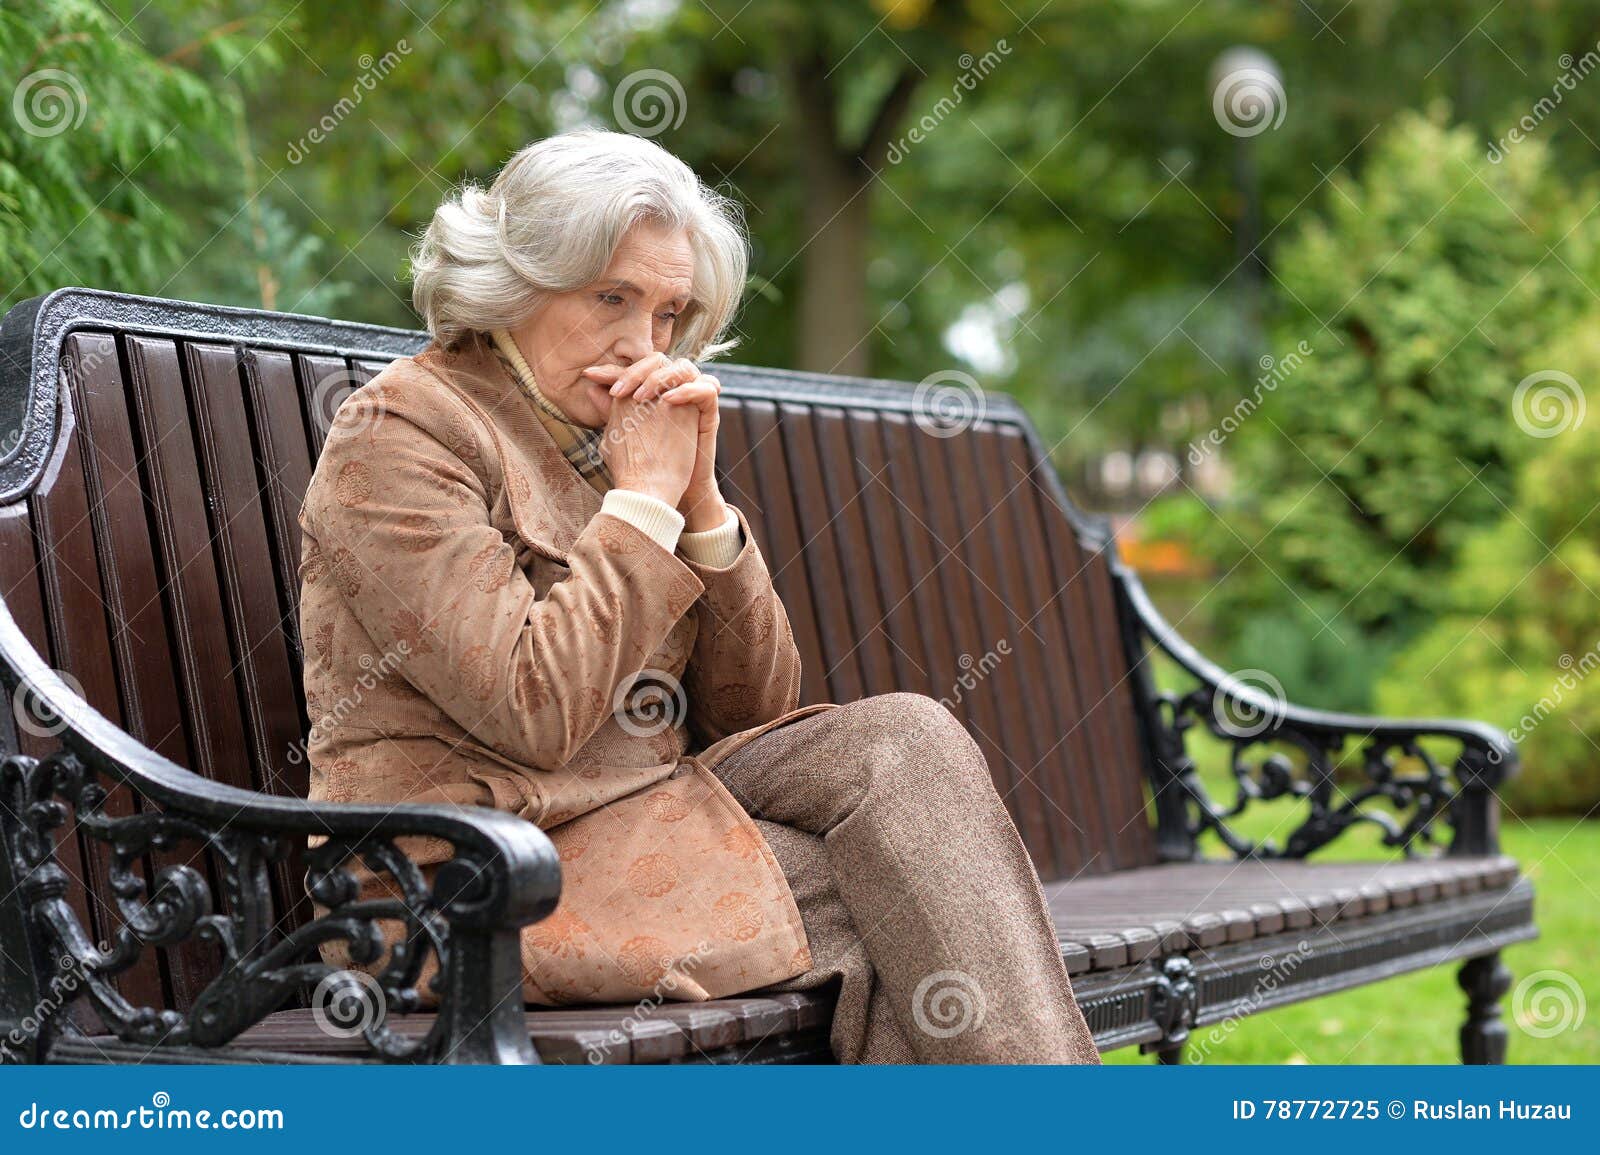 Пожилая вдова. Пожилая женщина в раздумье. Пожилая женщина на лавочке. Пожилая женщина в парке. Грустная женщина средних лет.